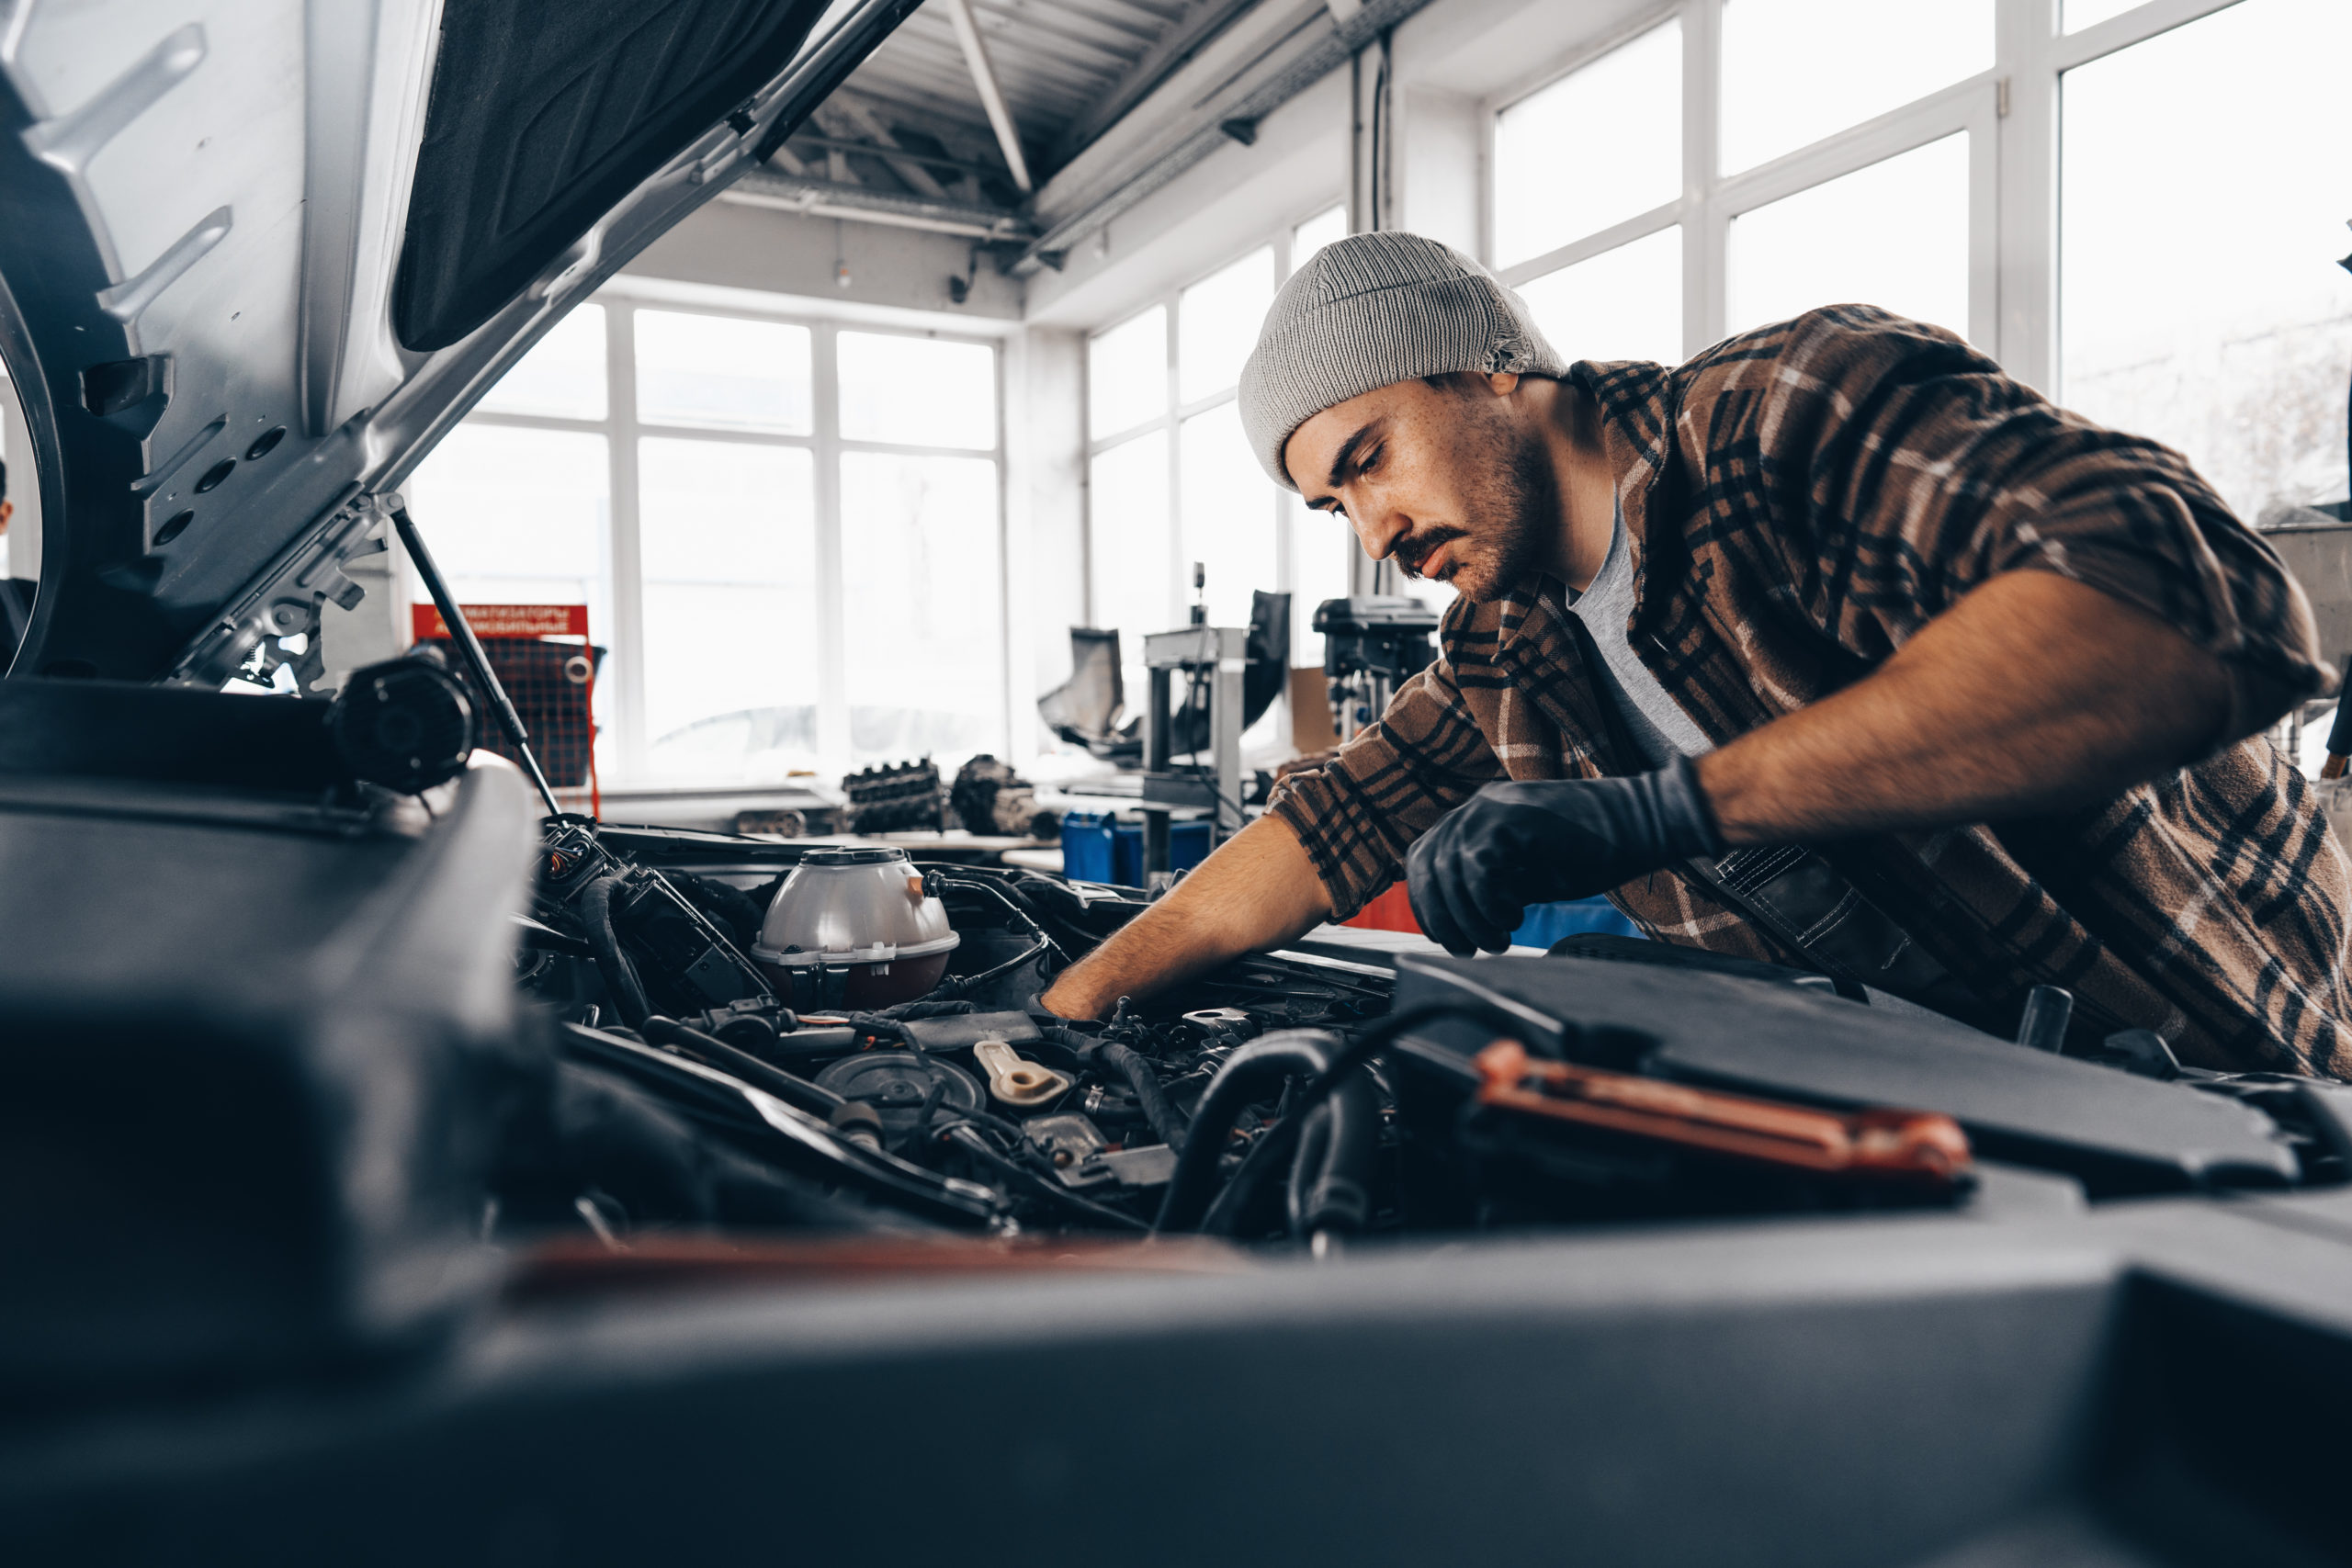 https://autolab.com.co/wp-content/uploads/2023/09/mechanic-examining-car-in-auto-car-repair-service-2023-05-12-20-24-56-utc-scaled.jpg